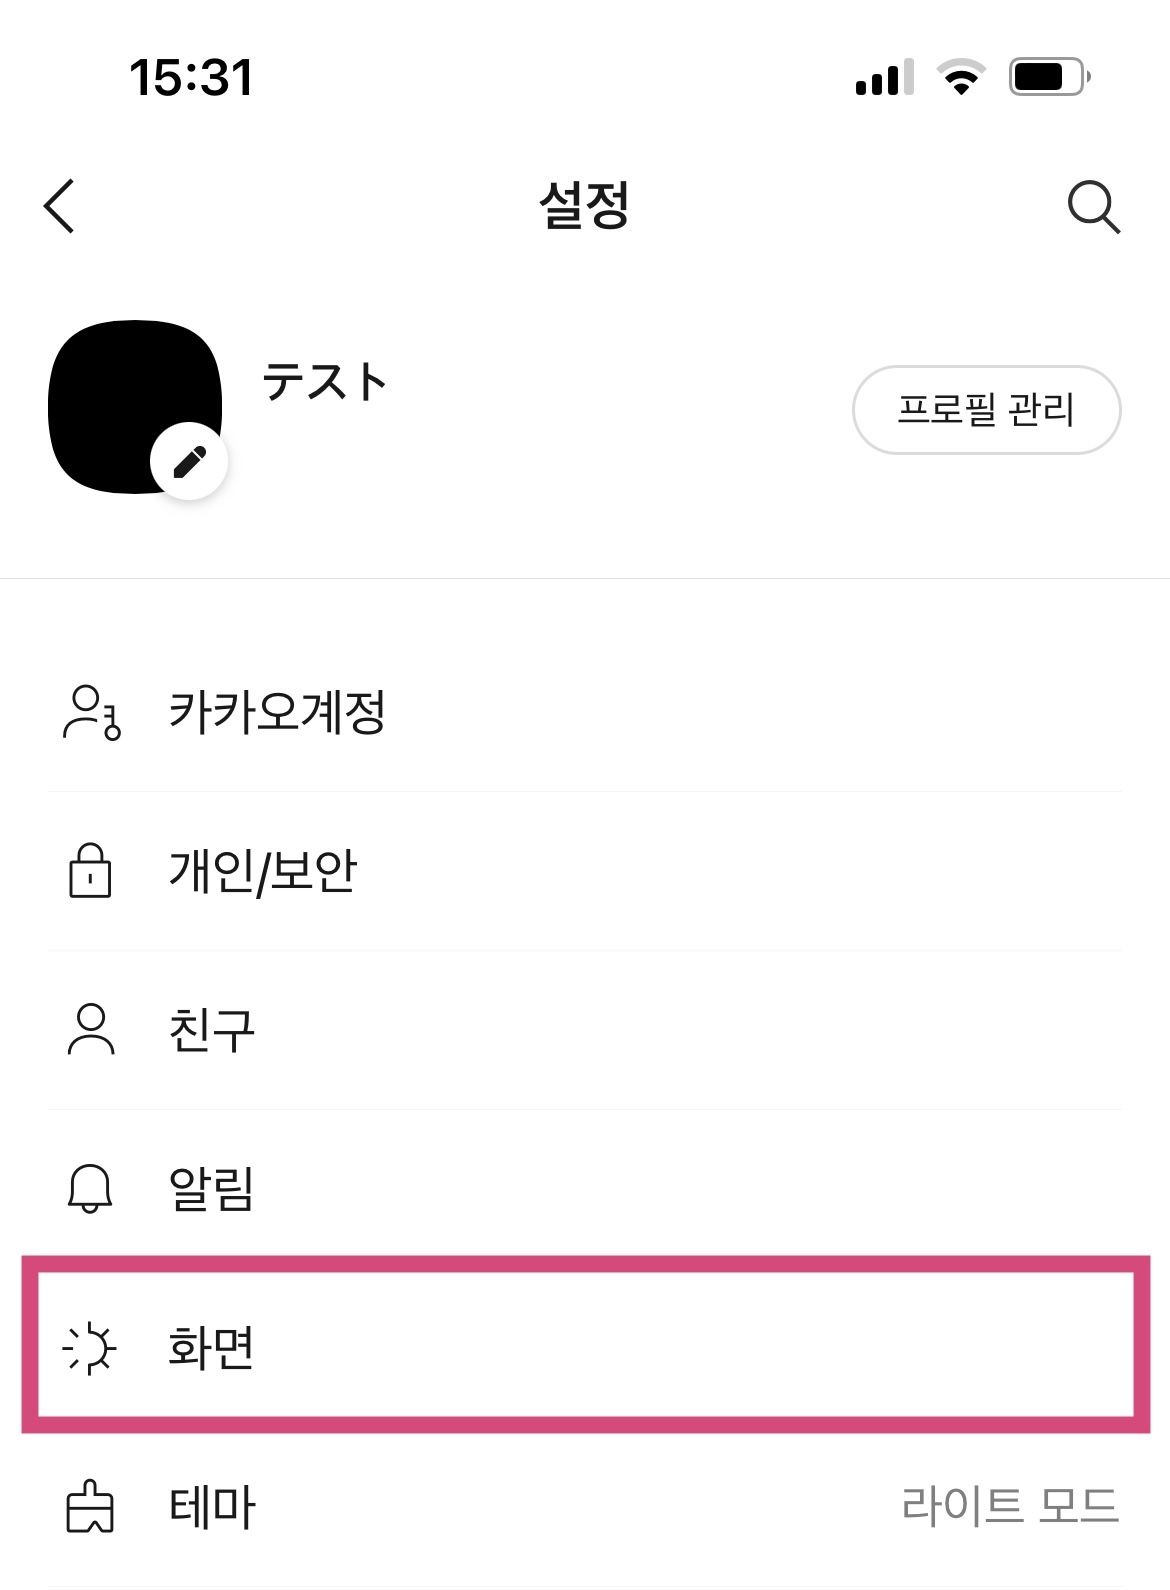 カカオトークの韓国語フォントを変更する方法